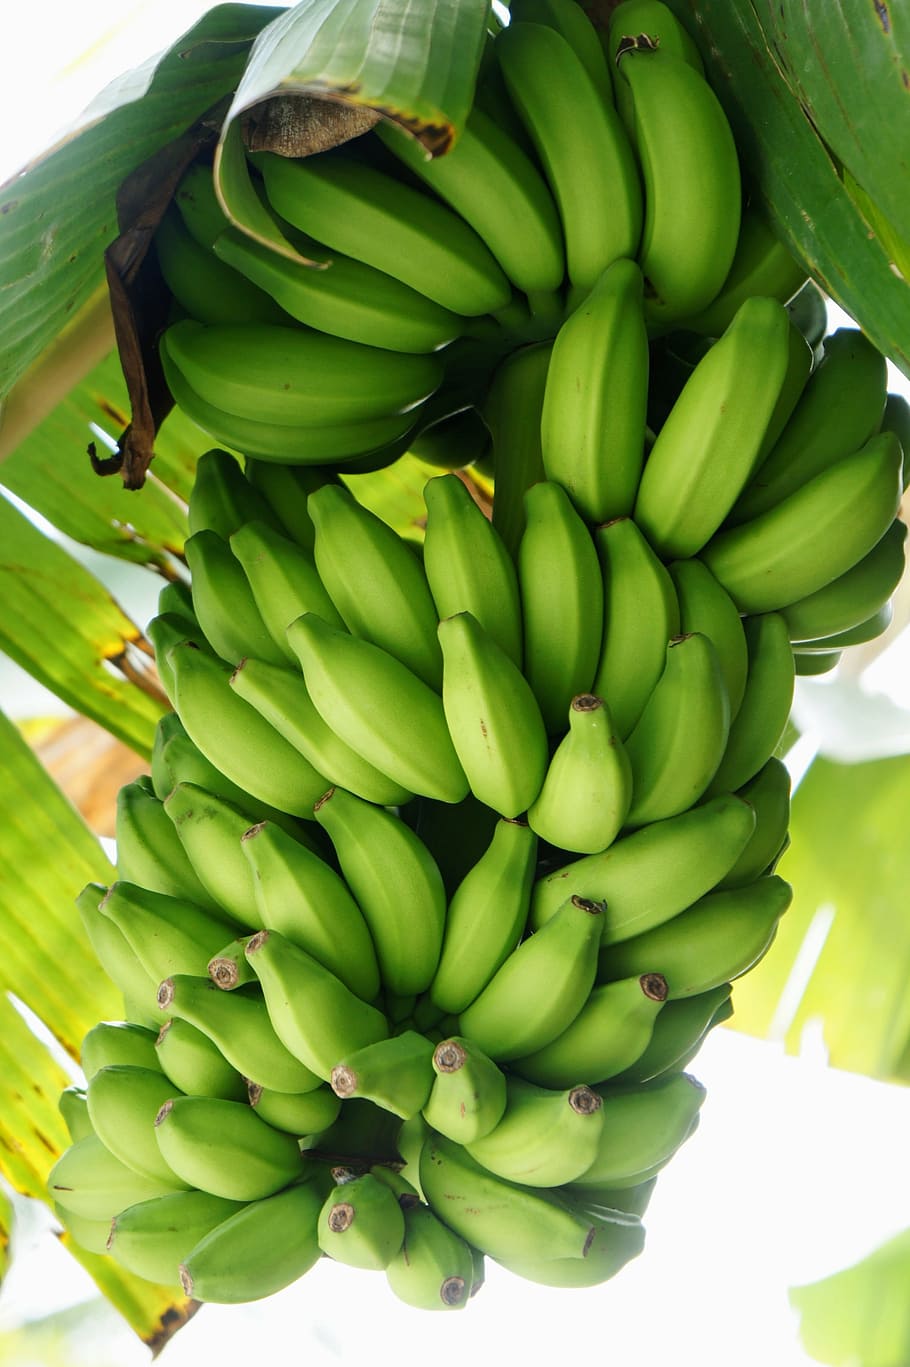 bananas verdes, banana, arbusto, arbusto de banana, amarelo, saudável, fruta, cor verde, comida e bebida, alimentos